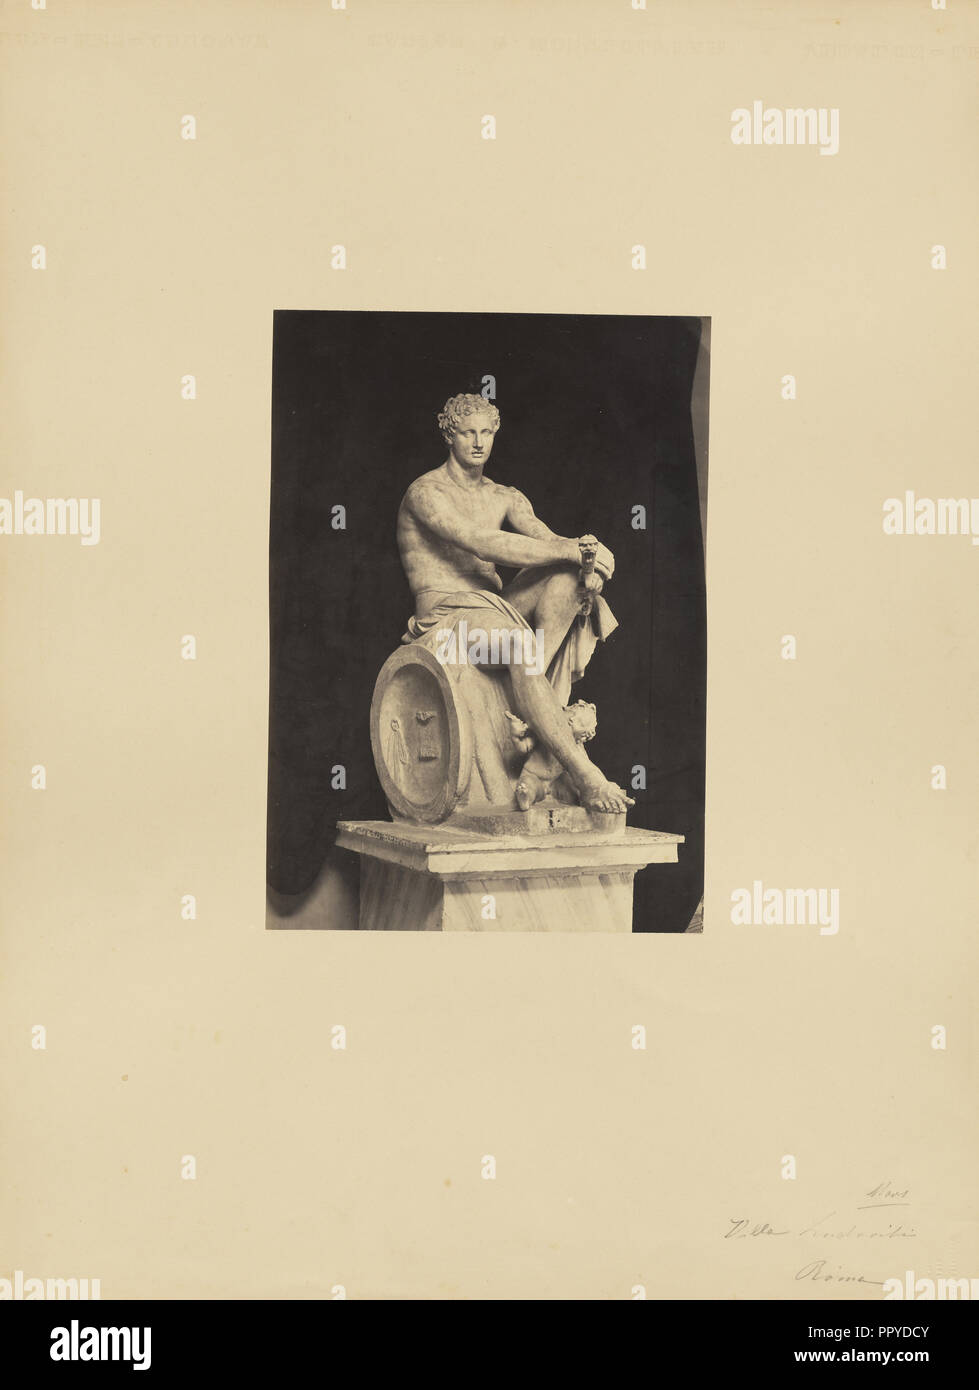 La sculpture classique, l'homme assis ; James Anderson, britannique, 1813 - 1877, Rome, Italie ; environ 1845 - 1855 ; à l'albumine argentique Banque D'Images